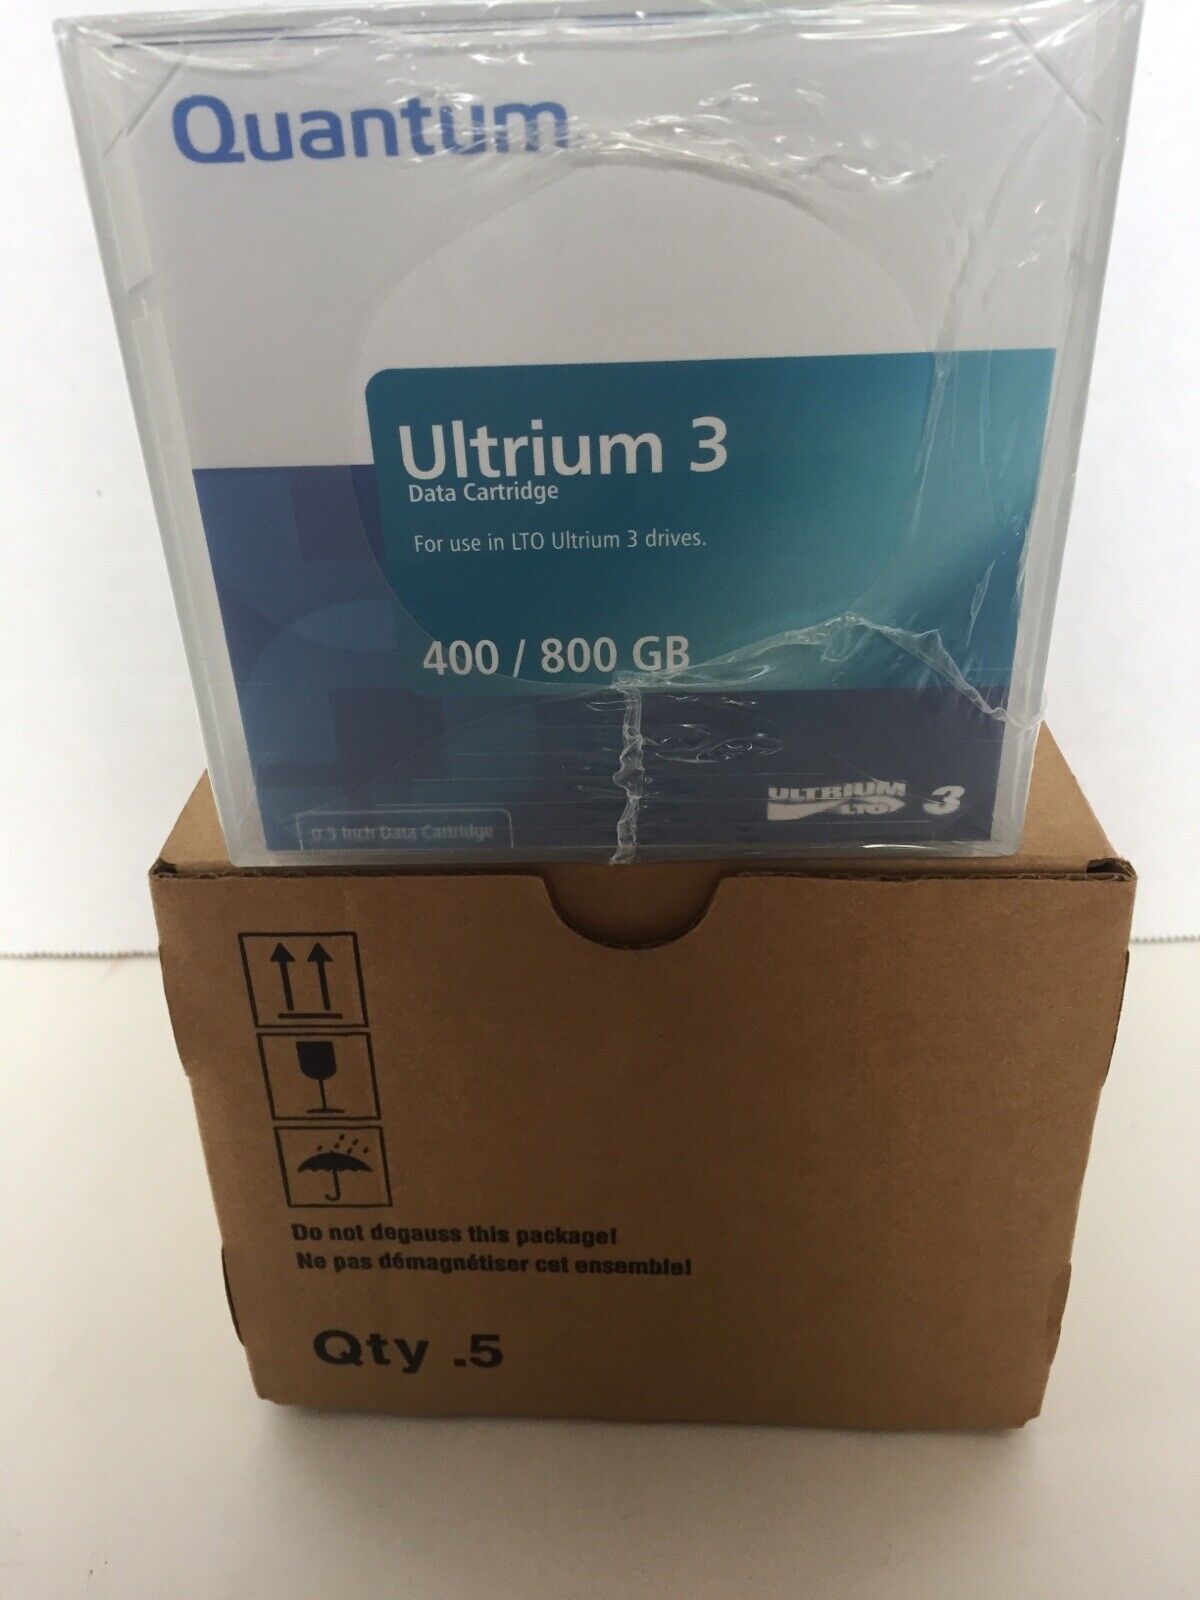 Quantum Ultrium 3 Data Cartridge Set Of 5 New In Box